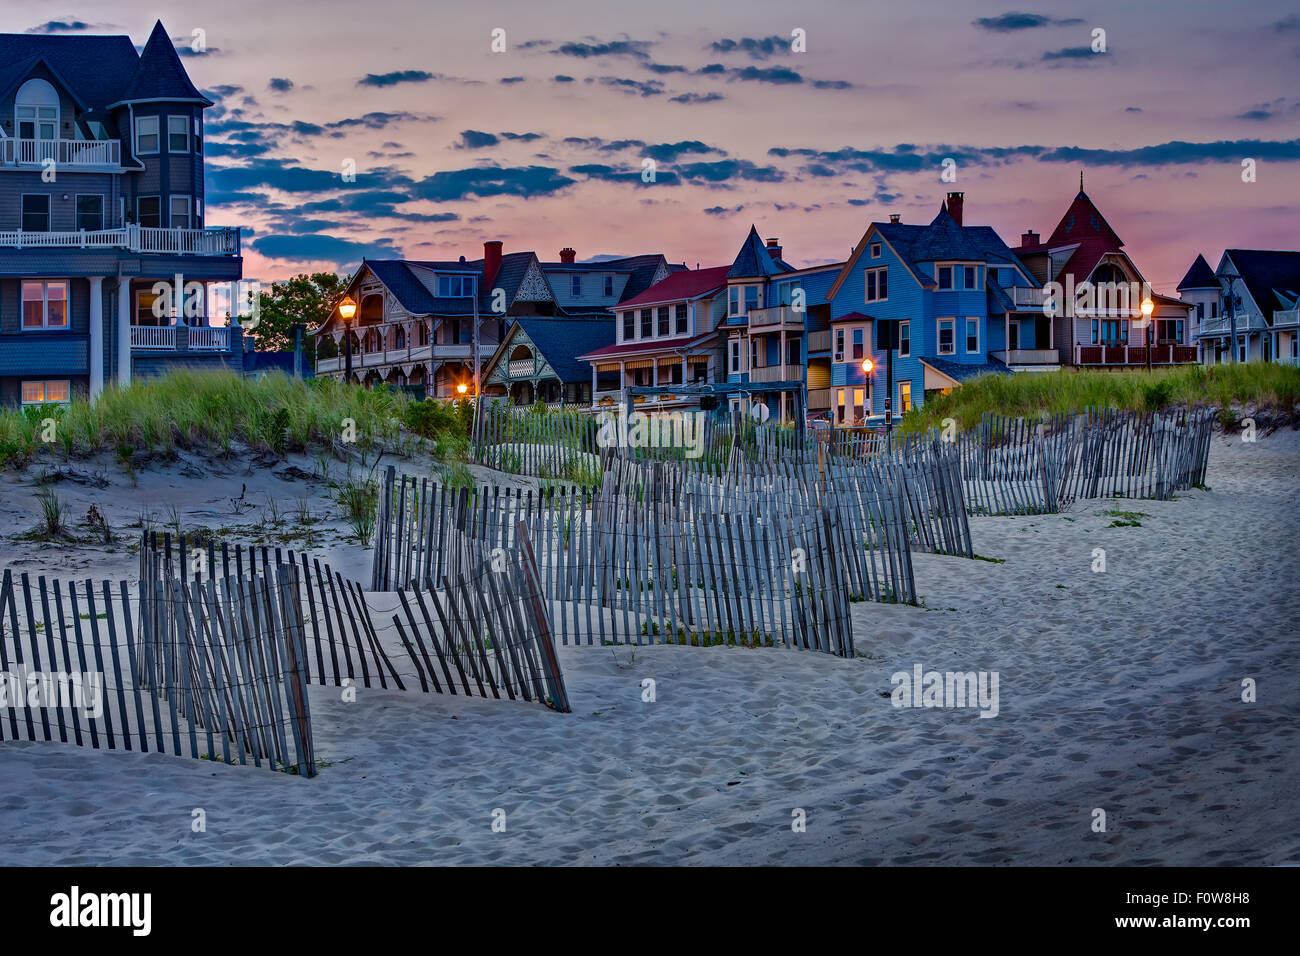 Ocean Grove Asbury Park NJ - Sun ha impostato dando un bel rimbalzo di colori per la sera presto western skies a Asbuty Park Beach in Asbury, New Jersey. Immagine è anche disponibile come una stampa in bianco e nero. Foto Stock